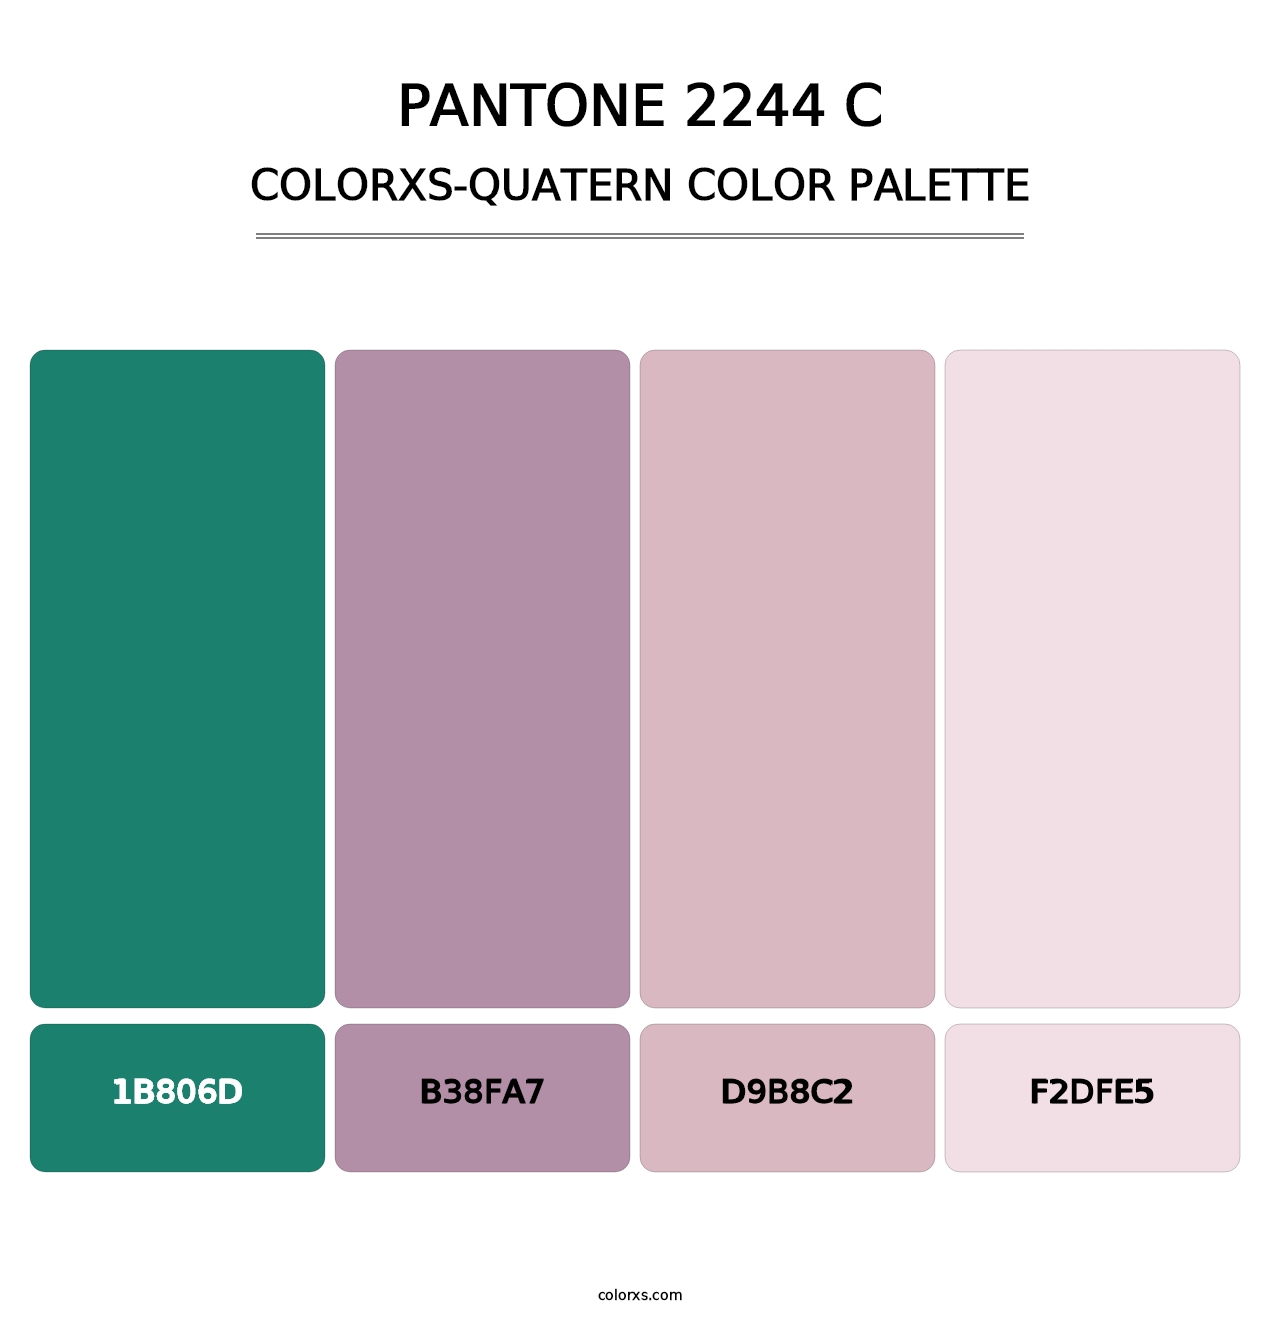 PANTONE 2244 C - Colorxs Quatern Palette